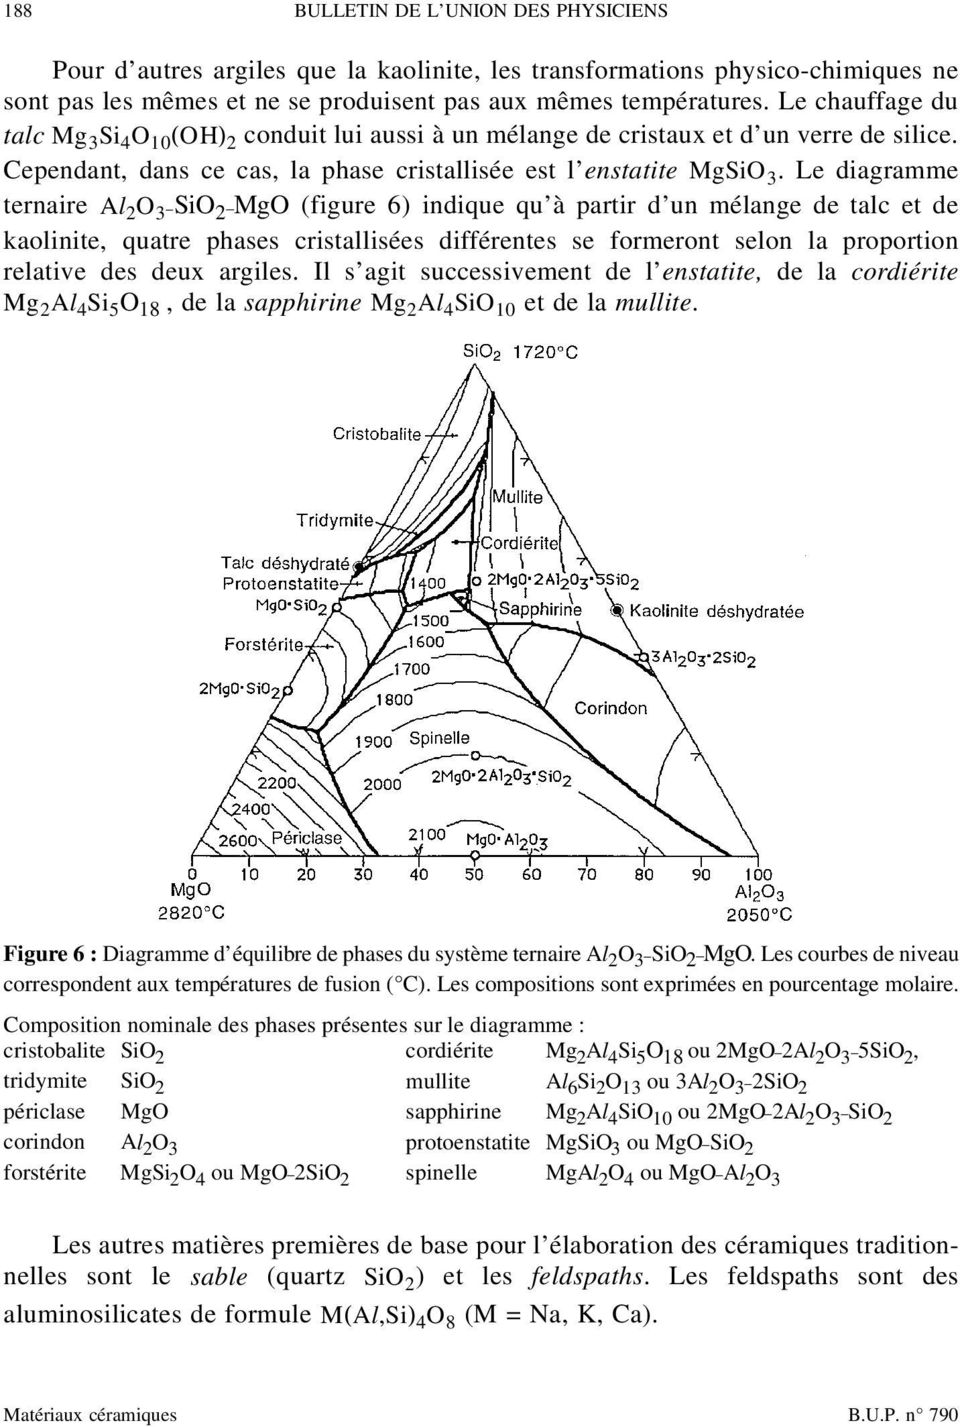 Le diagramme ternaire Al 2 O 3 SiO 2 MgO (figure 6) indique qu à partir d un mélange de talc et de kaolinite, quatre phases cristallisées différentes se formeront selon la proportion relative des